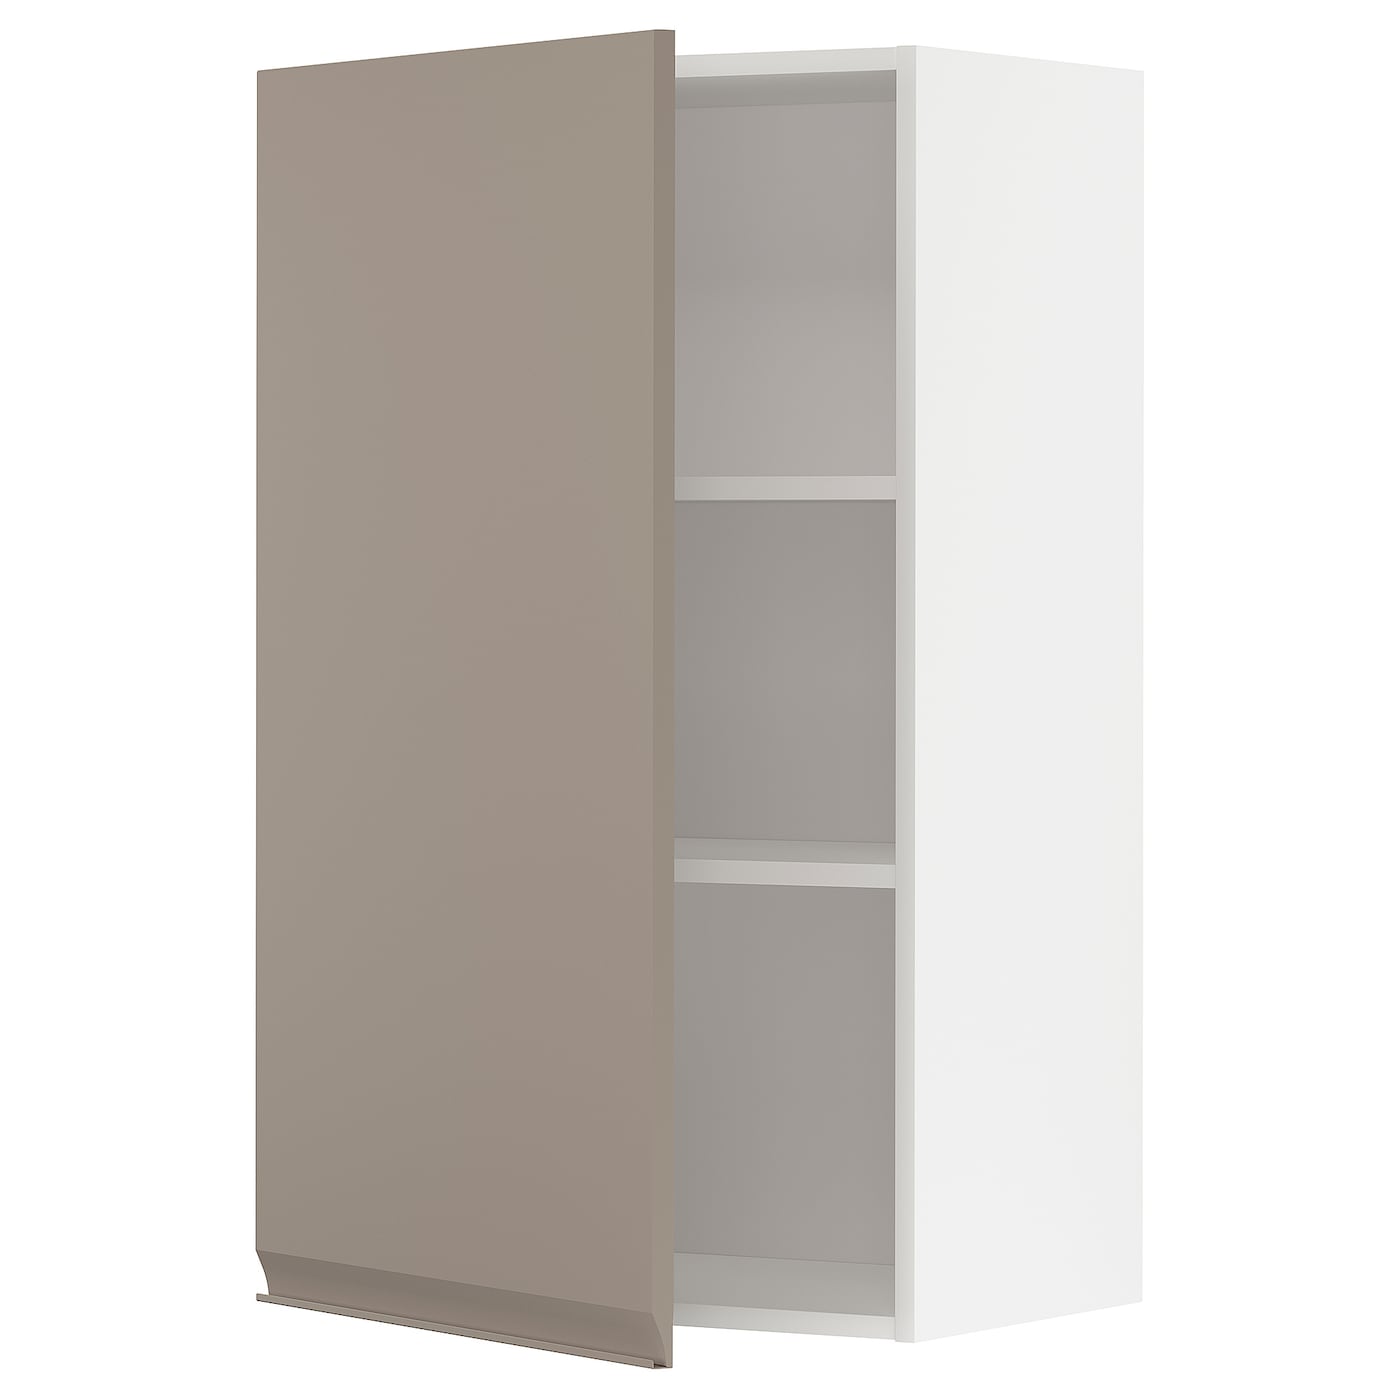 Навесной шкаф с полкой - METOD IKEA/ МЕТОД ИКЕА, 100х60 см, белый/светло-коричневый